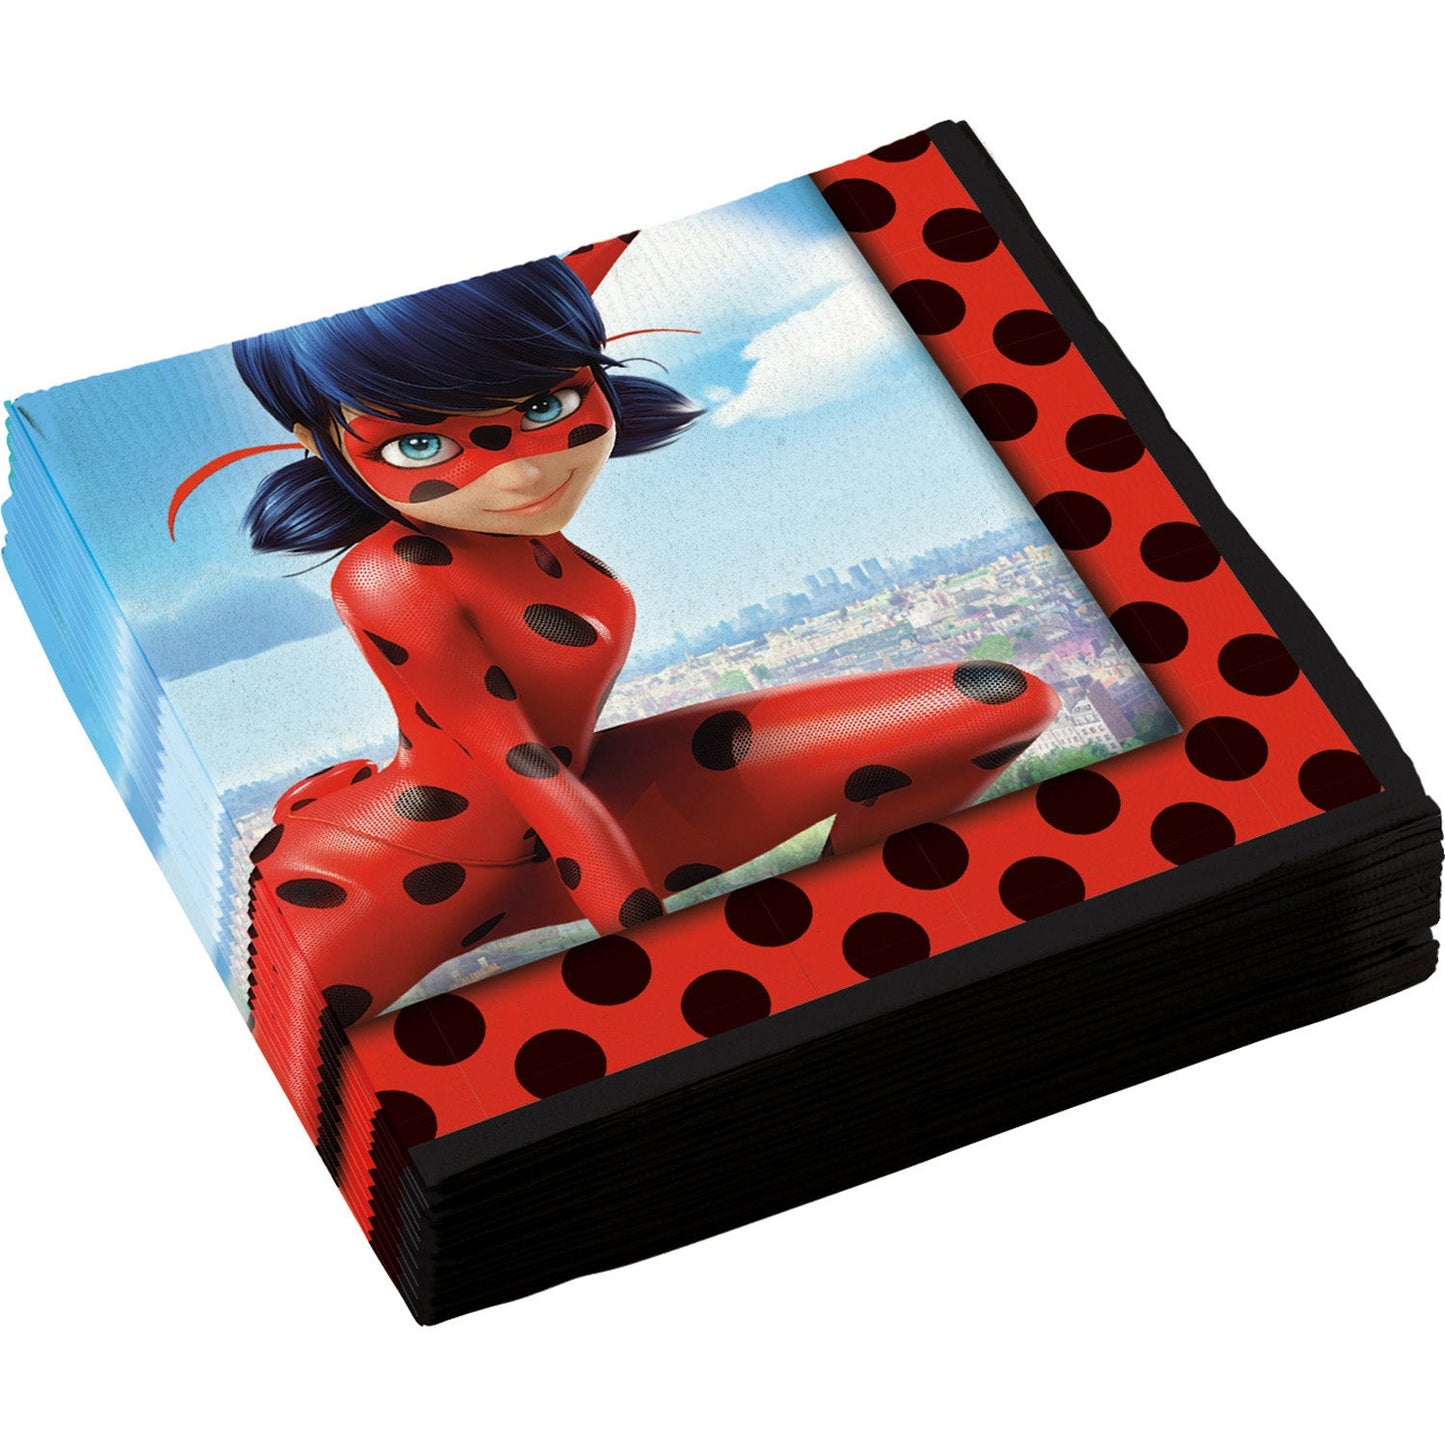 Sorglos-Partykarton "Miraculous Ladybug" 66 Teile - Party im Karton